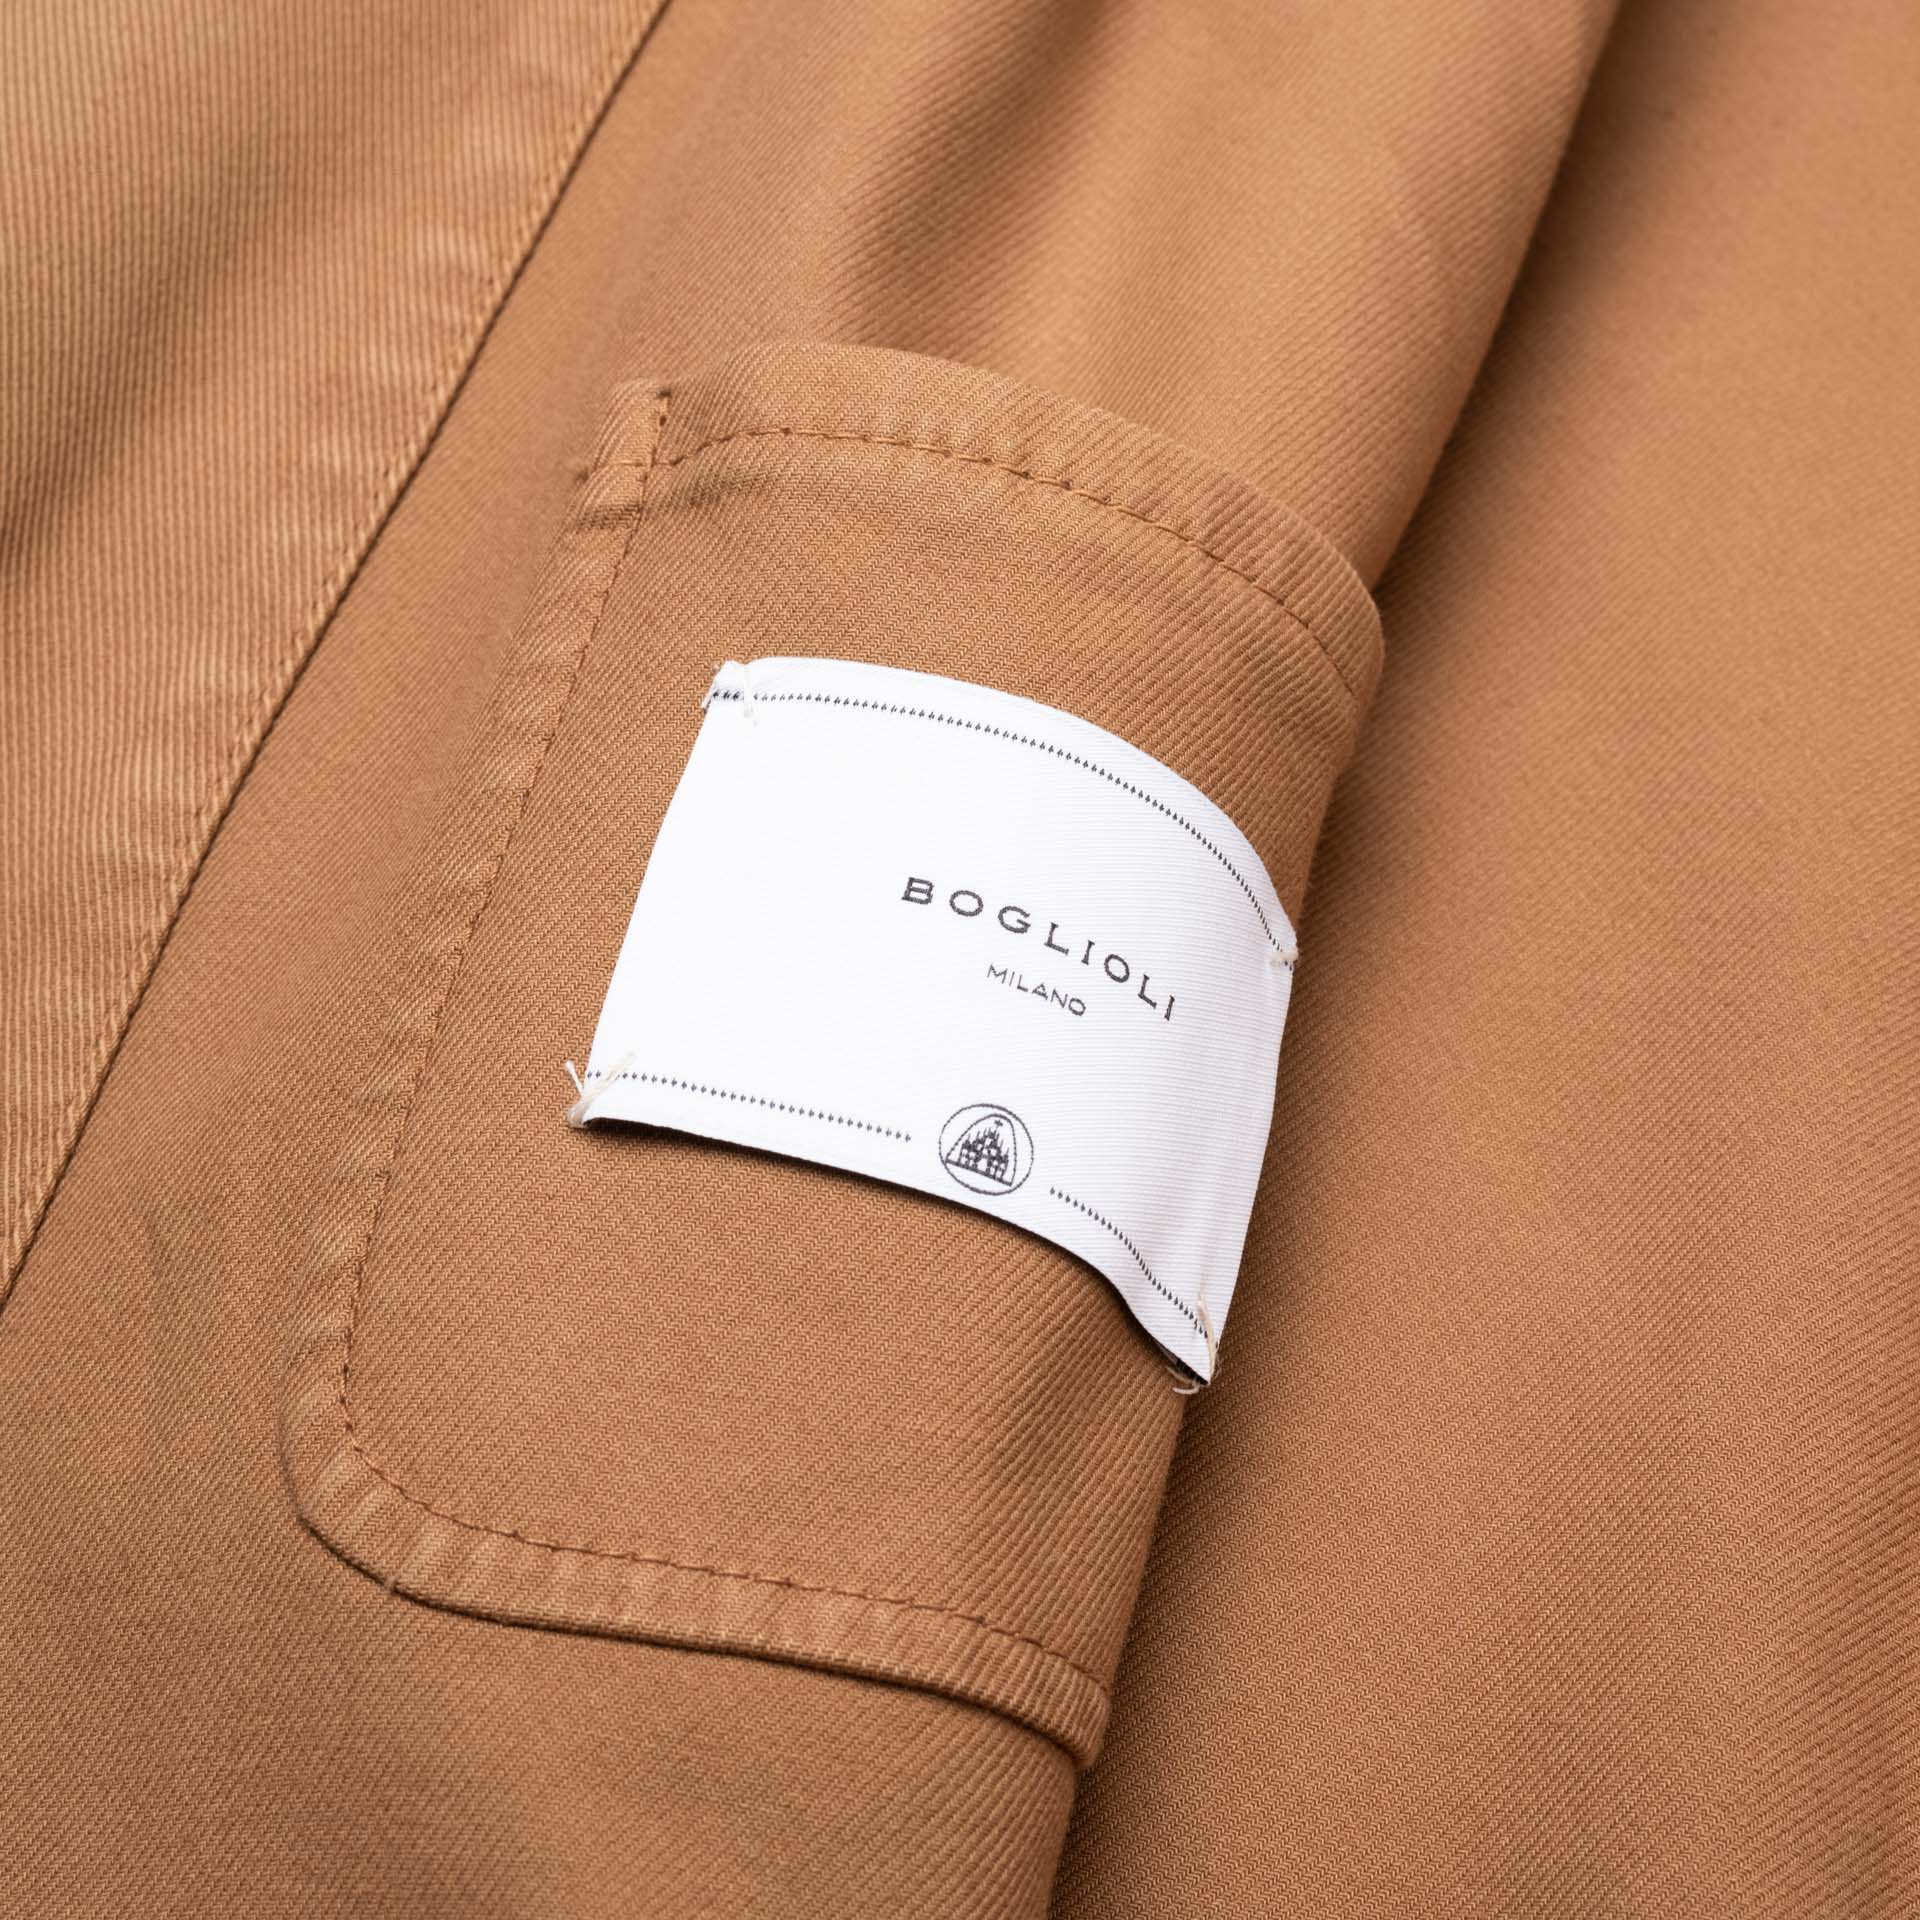 BOGLIOLI Milano "67" Light Brown Cotton 4 Button Unlined Jacket EU M NEW US 40 BOGLIOLI